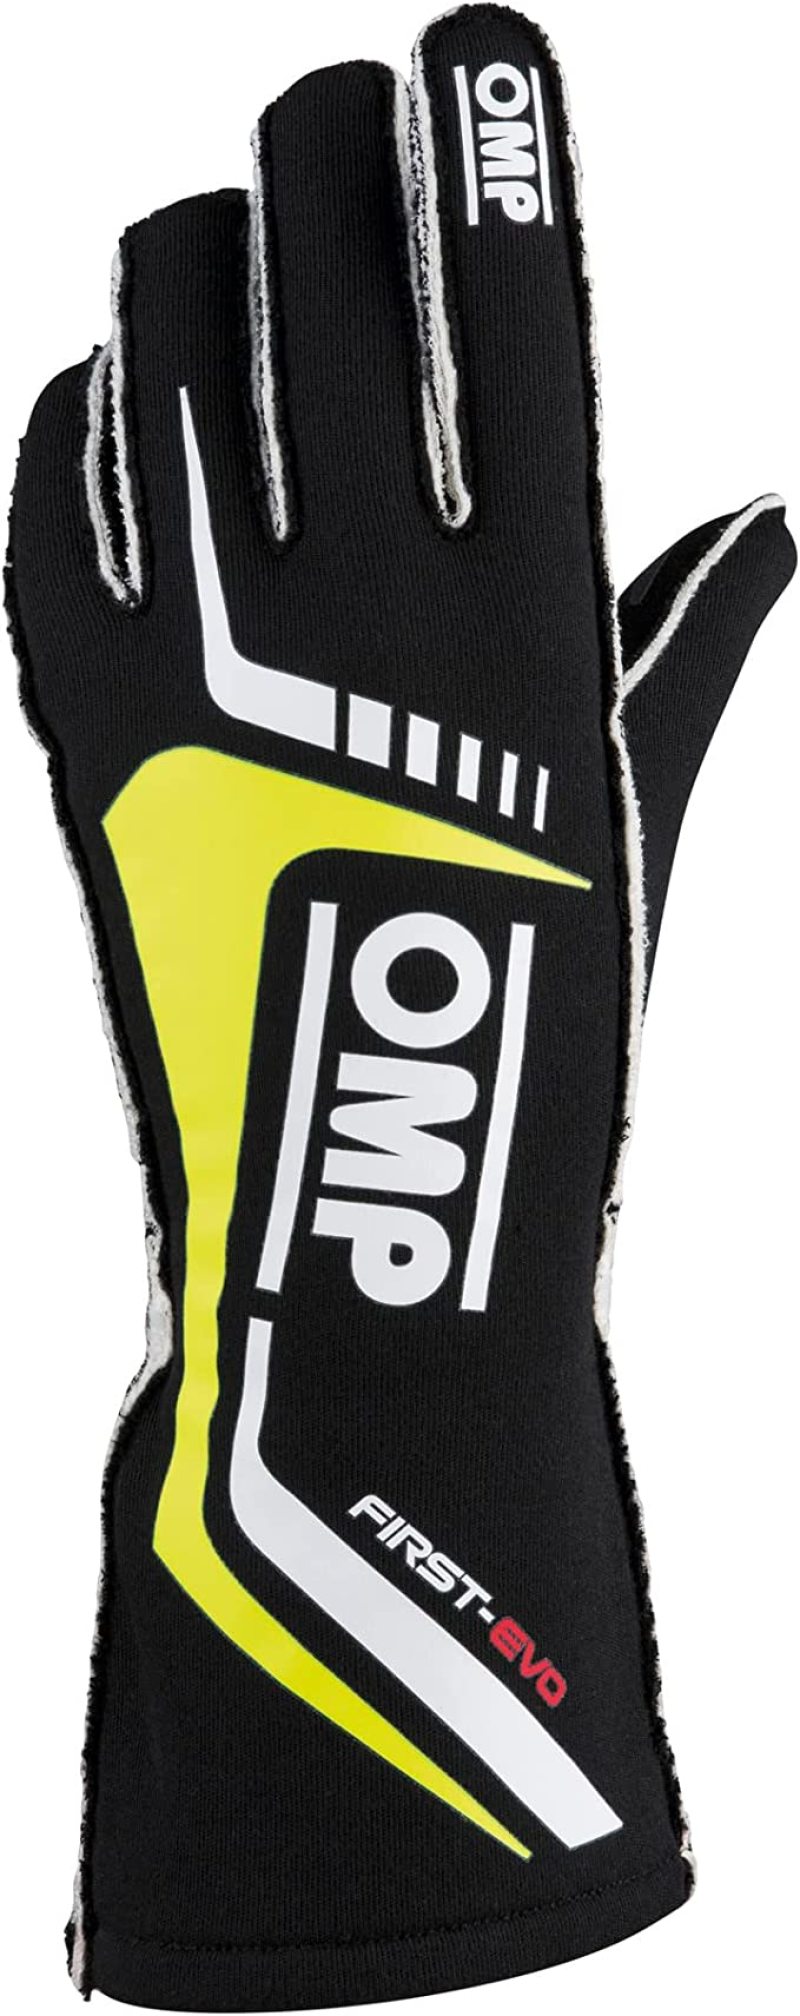 OMP First Evo Gloves Black/Yellow - Size XL (Fia 8856-2018) - IB0-0767-A01-178-XL